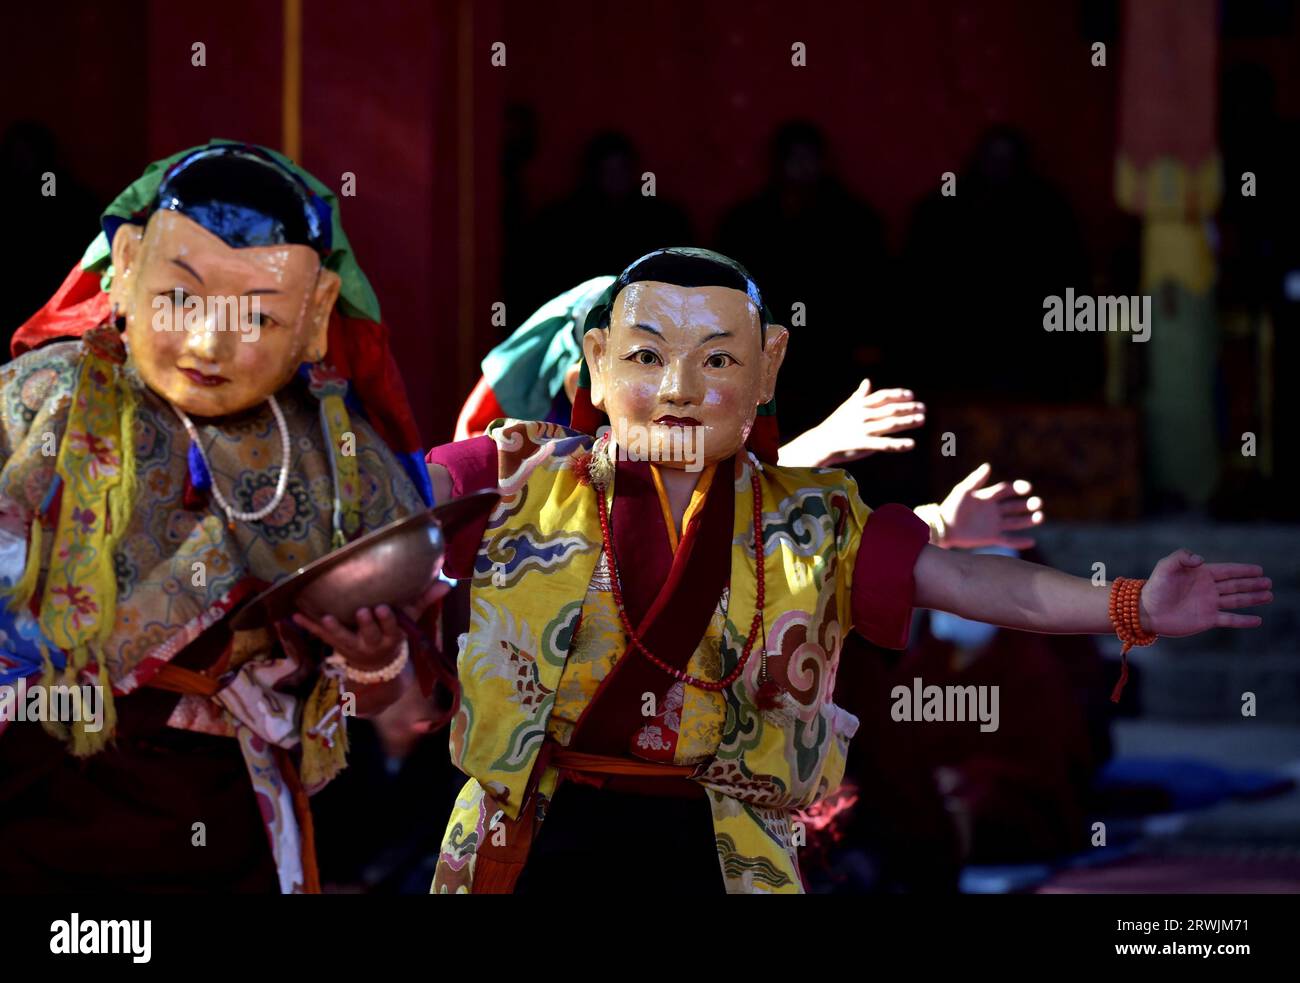 **CINA CONTINENTALE, HONG KONG, MACAO E TAIWAN FUORI** i monaci buddisti mascherati eseguono la danza Cham per pregare per un buon raccolto e una vita pacifica al Tashi Foto Stock